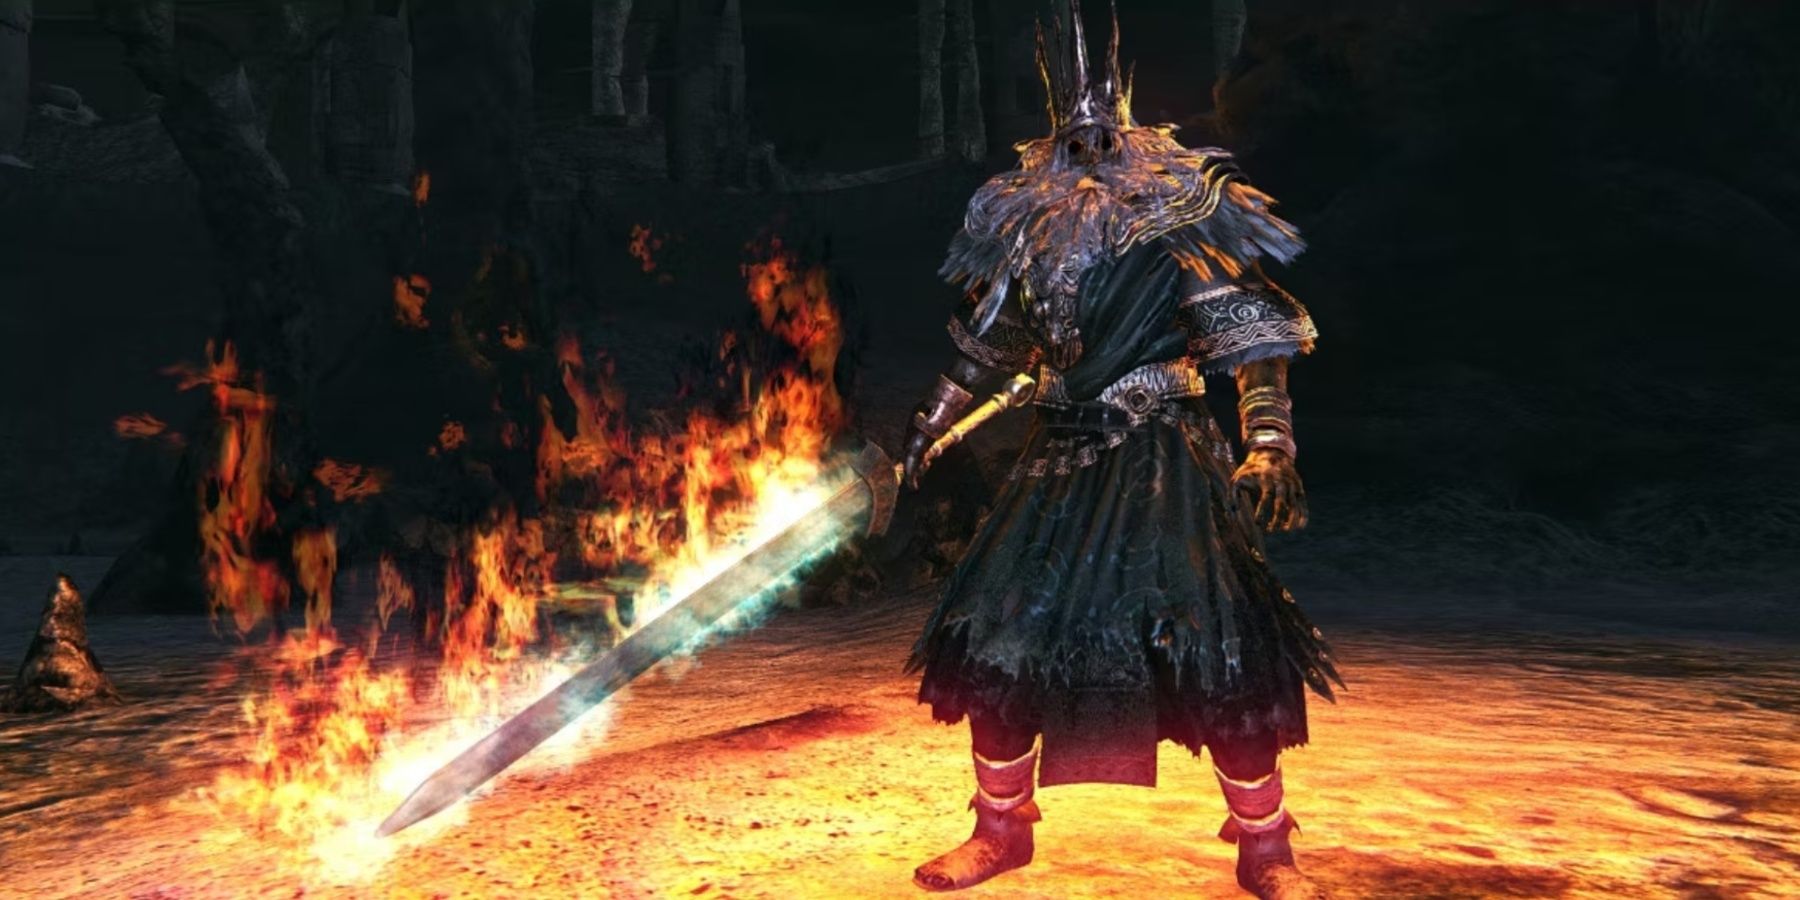 Dark Souls Gwyn wielding a flaming sword